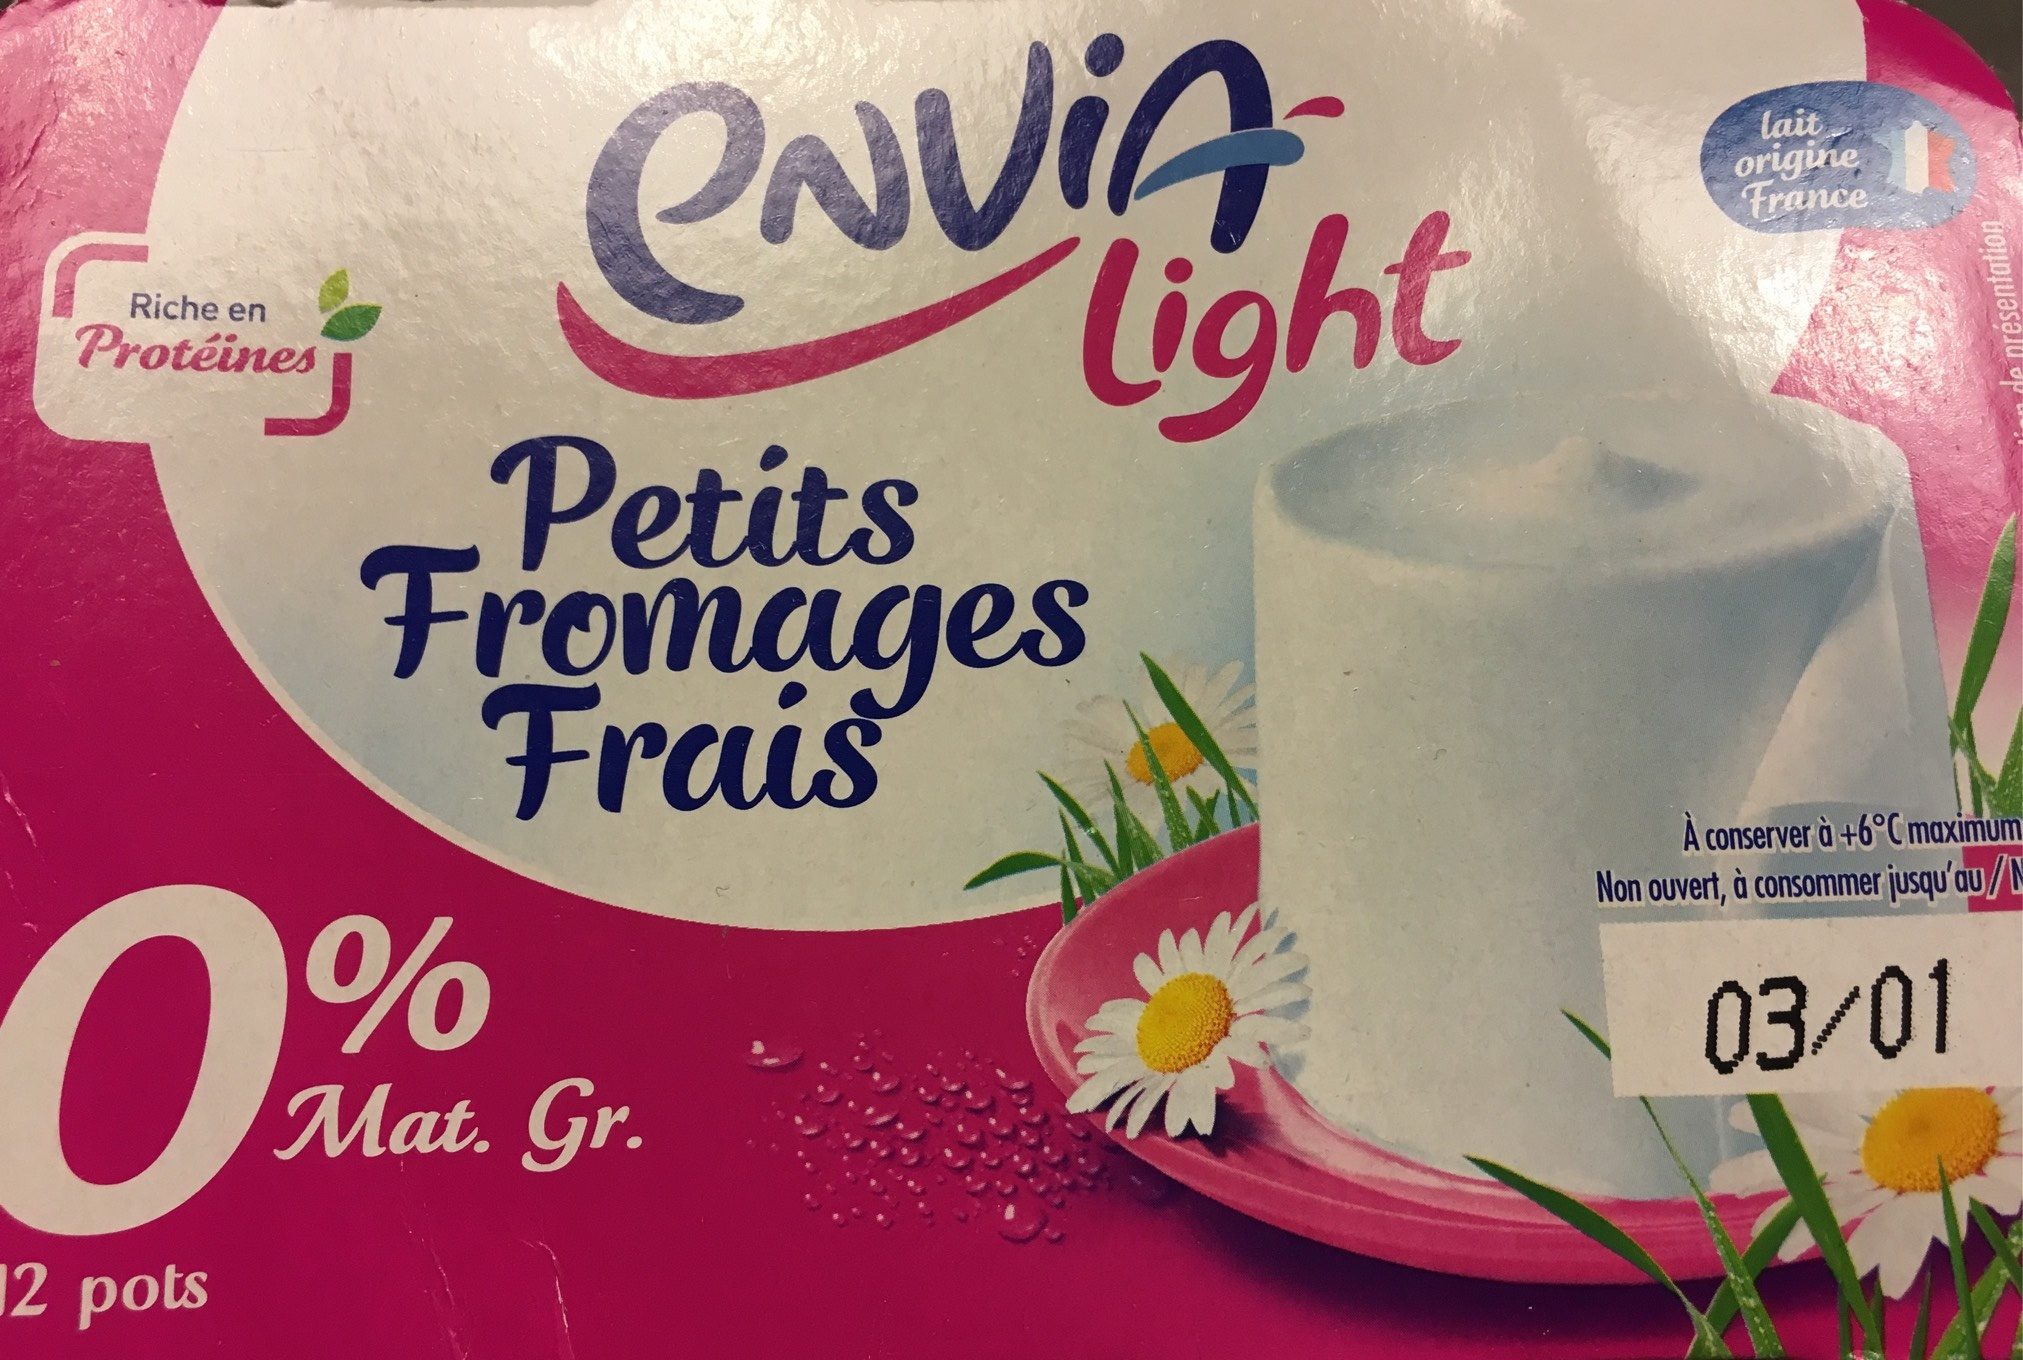 Envia light - Produkt - fr